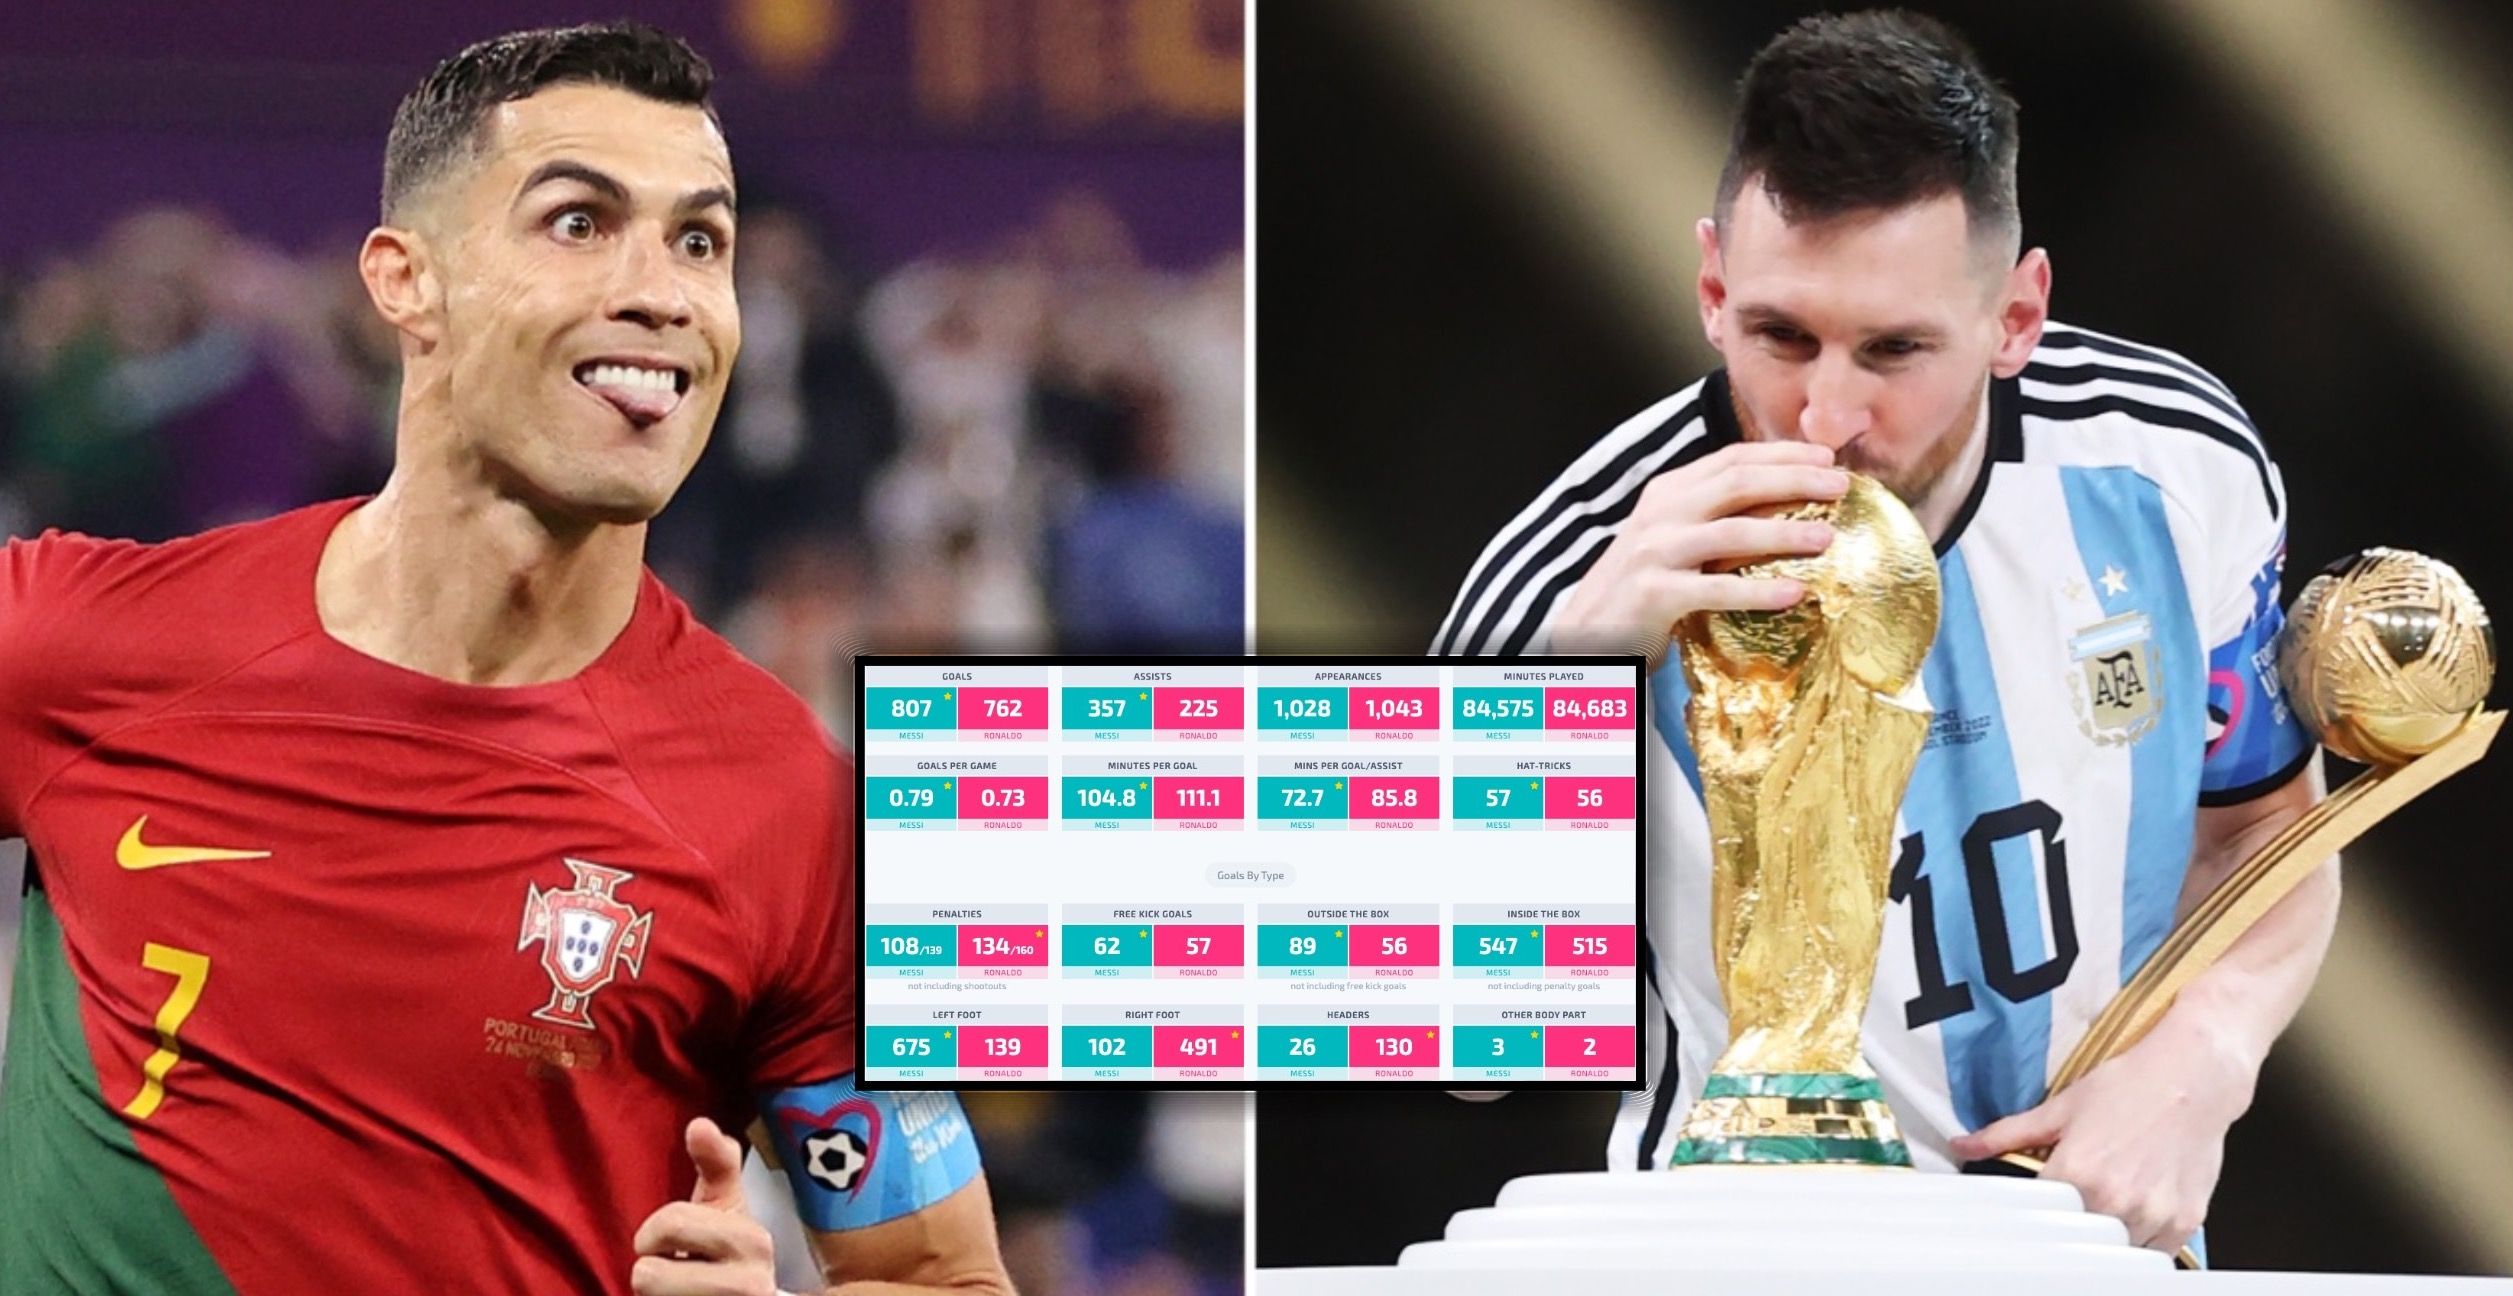 messi vs ronaldo - Google Search  Messi vs ronaldo, Messi and ronaldo,  Messi vs